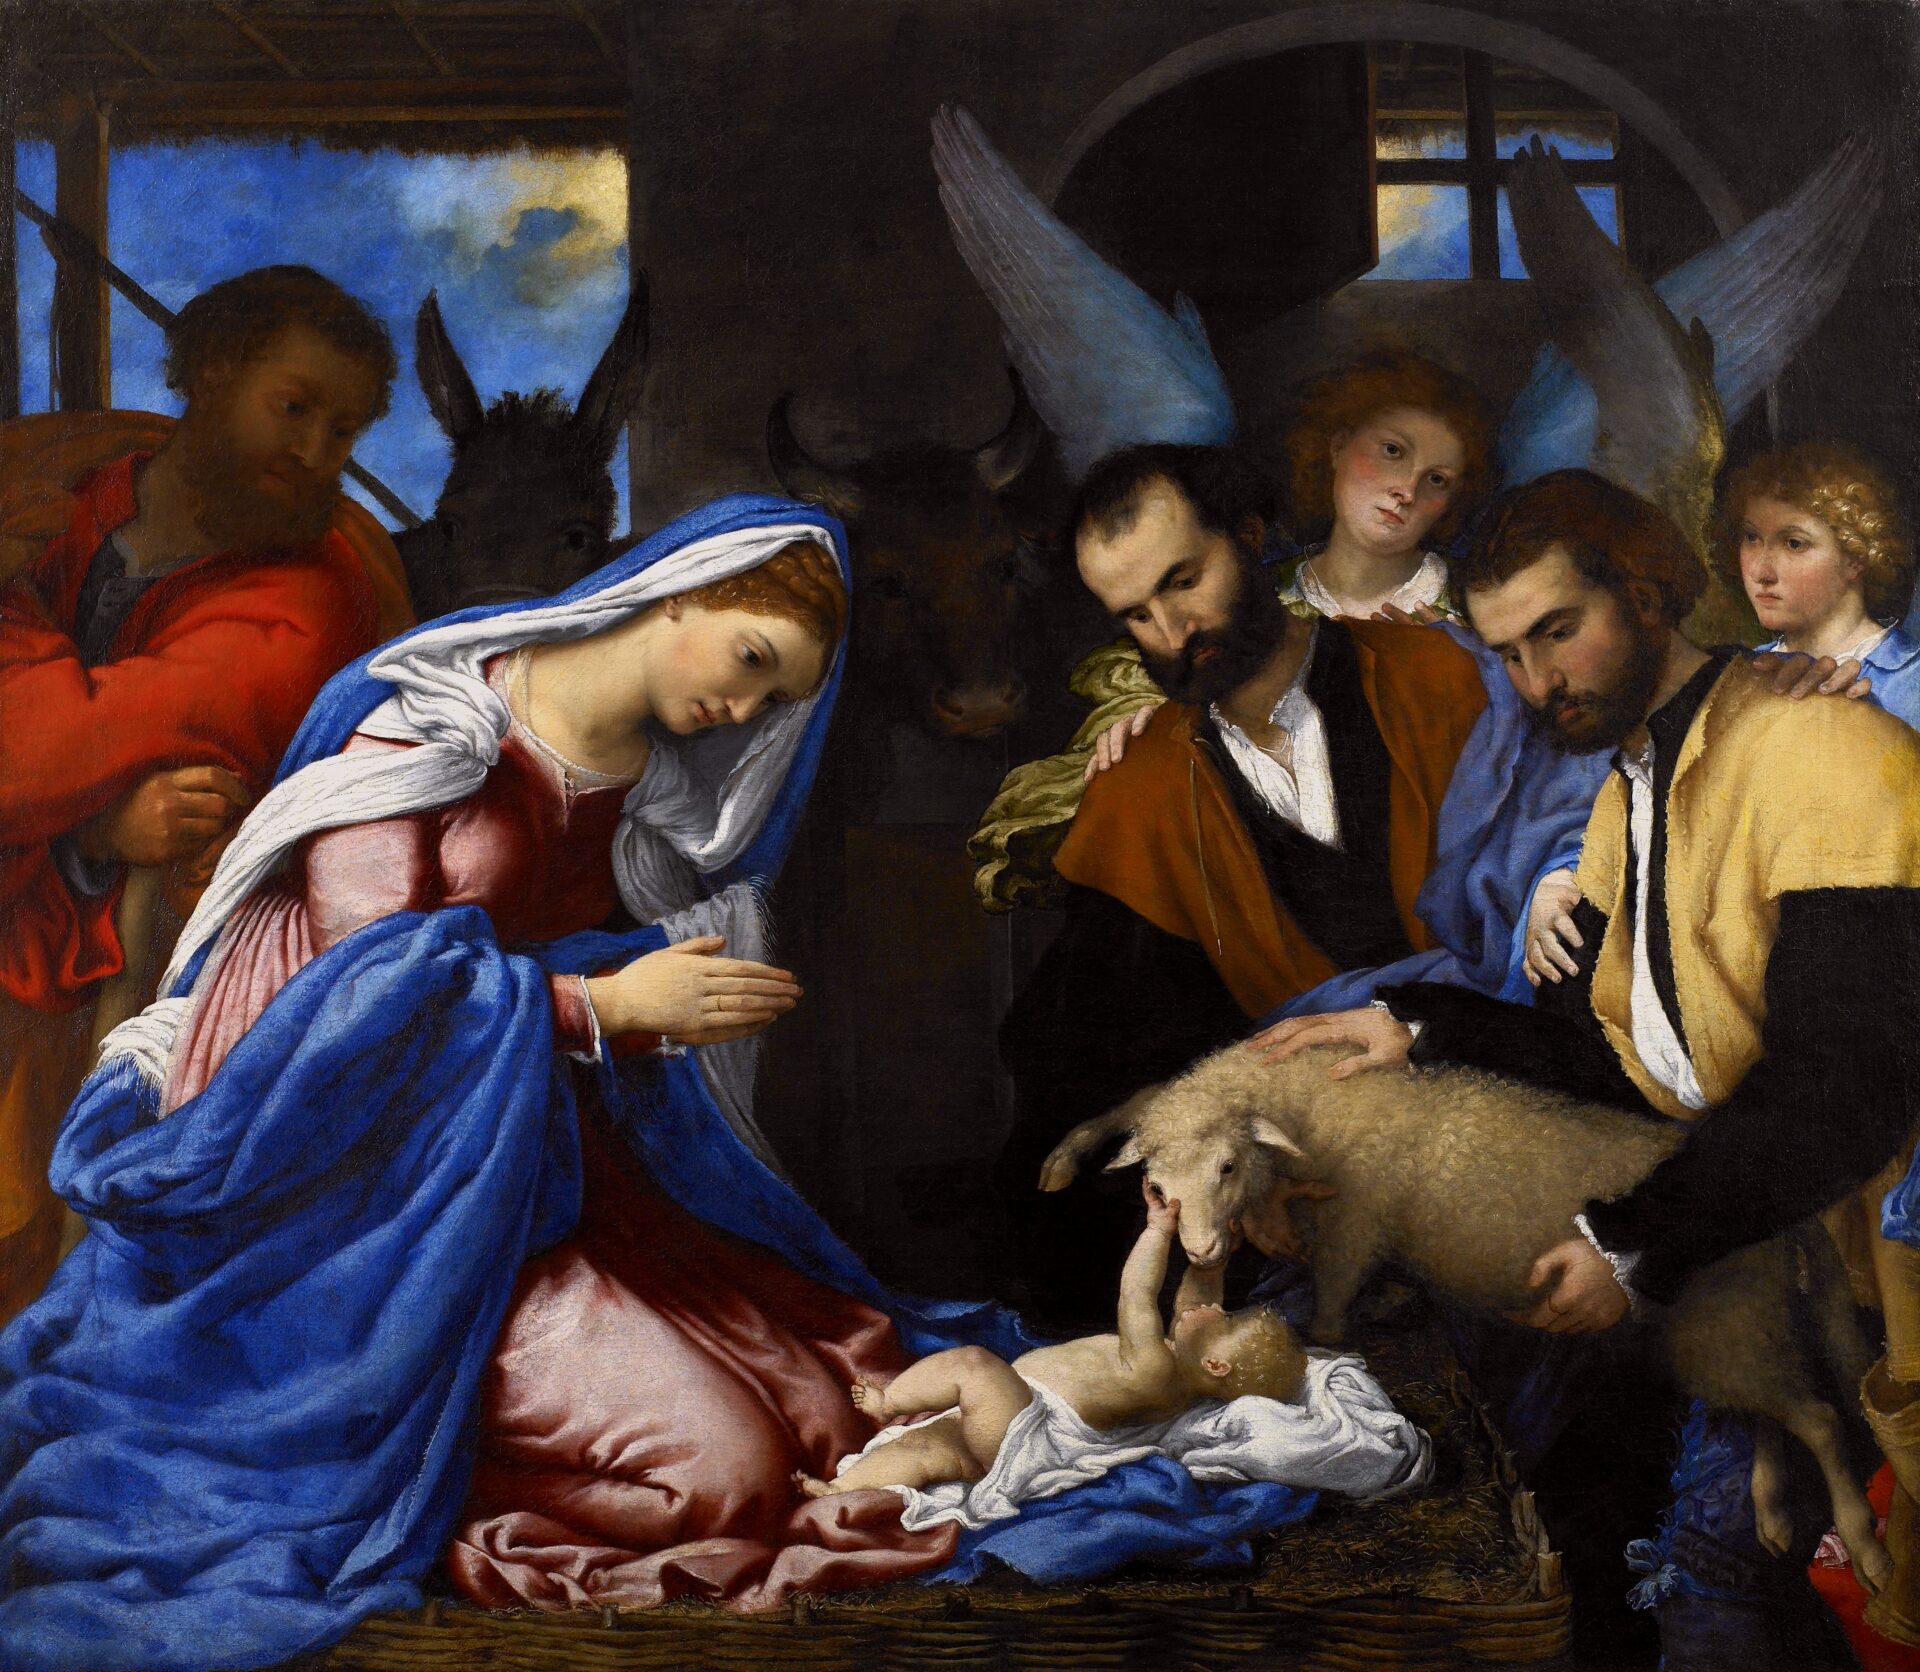 (Lorenzo Lotto, Adorazione dei pastori, Pinacoteca Tosio Martinengo, Brescia, 1534)